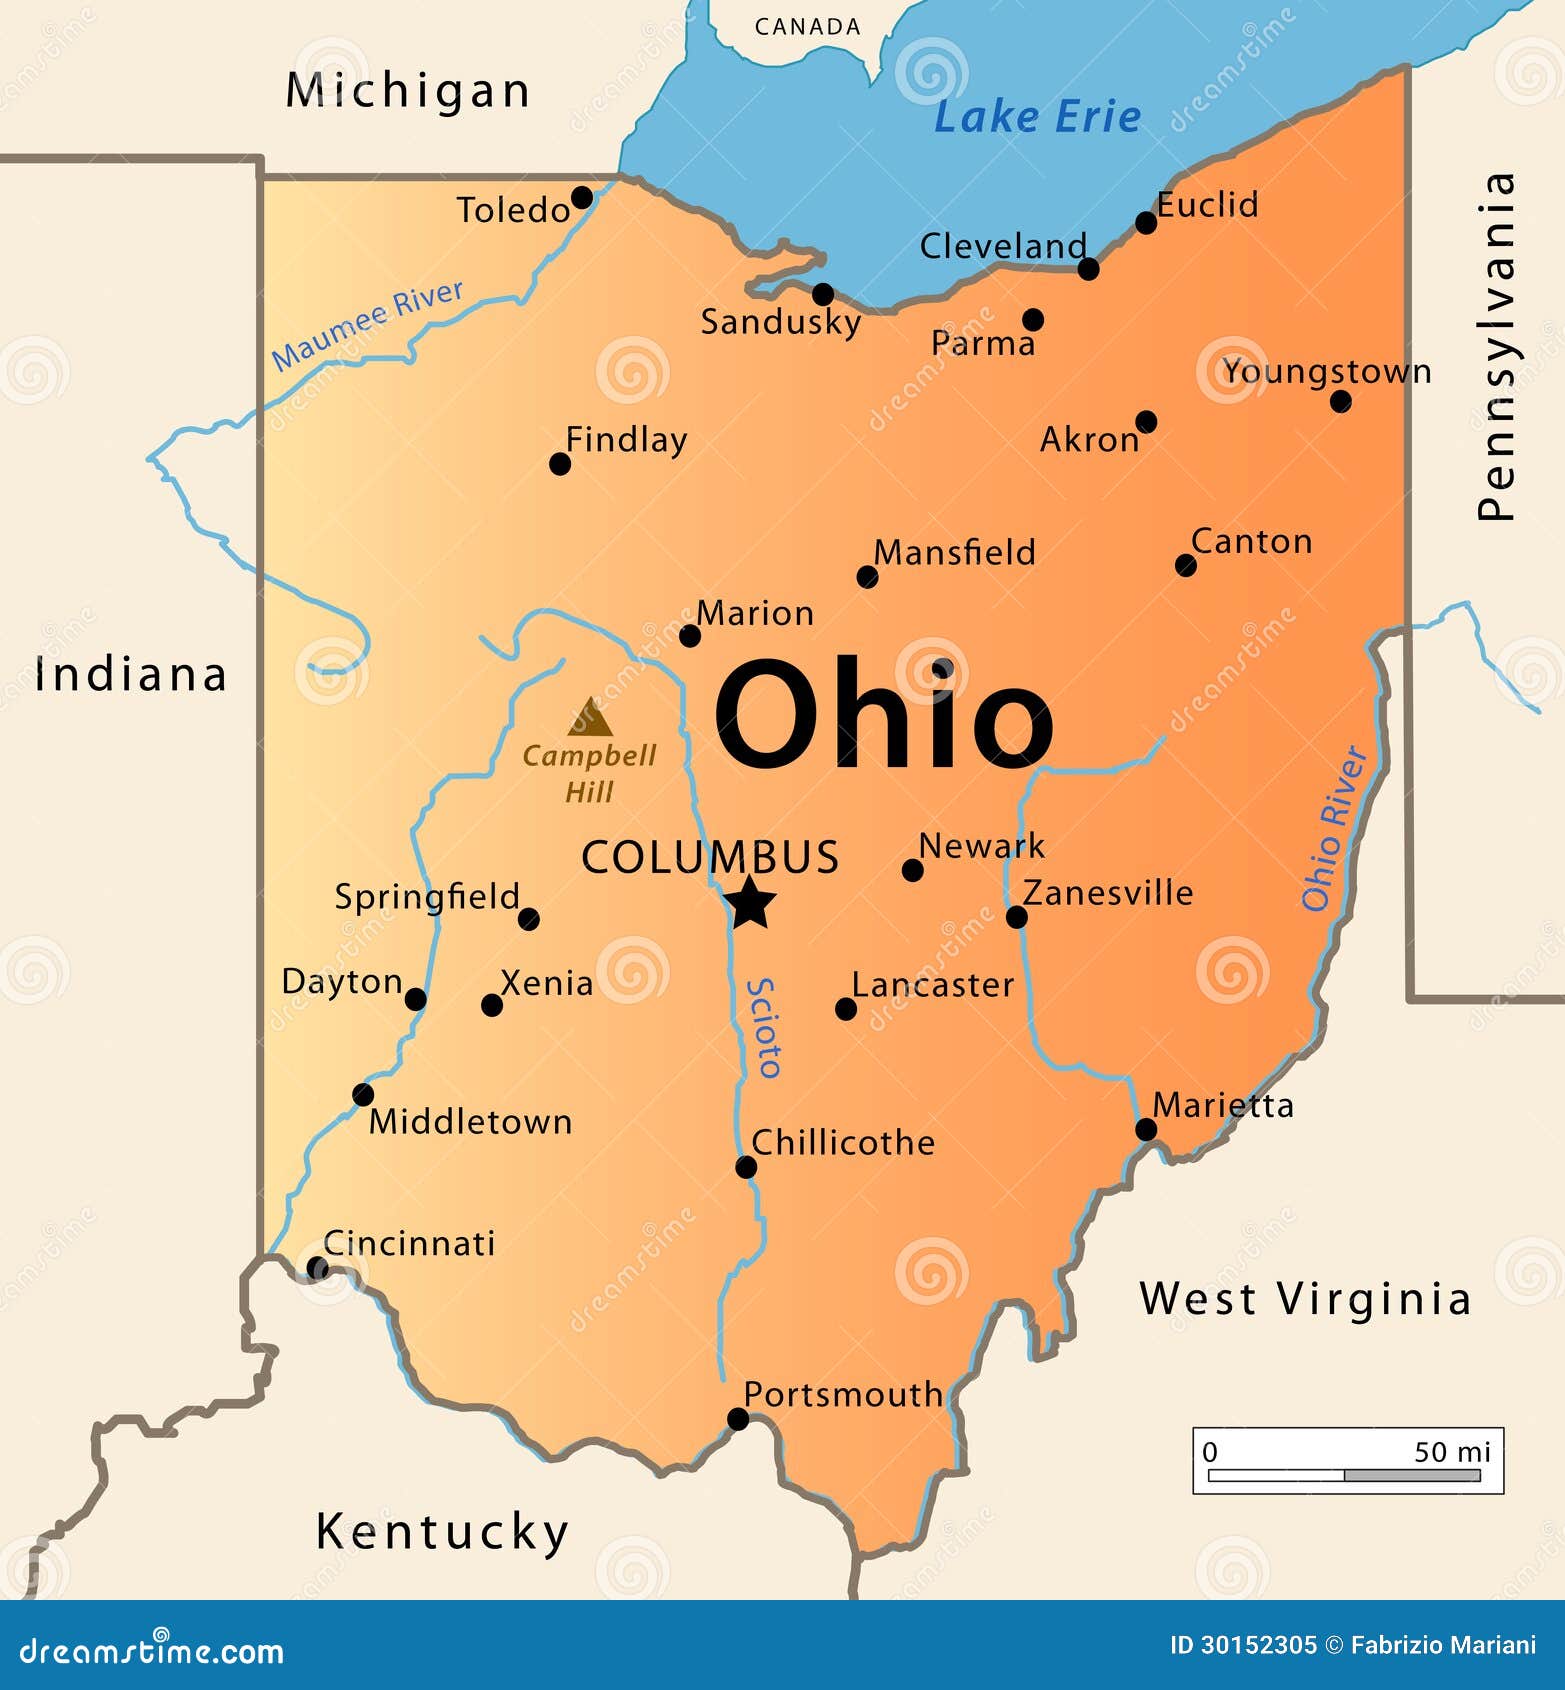 Χάρτης του Οχάιου. Απεικόνιση του χάρτη του μεγάλου κράτους του Οχάιου, ΗΠΑ. Χαρακτηρισμός των κύριων πόλεών του, των ποταμών, των λιμνών και της υψηλότερης αιχμής του κράτους.